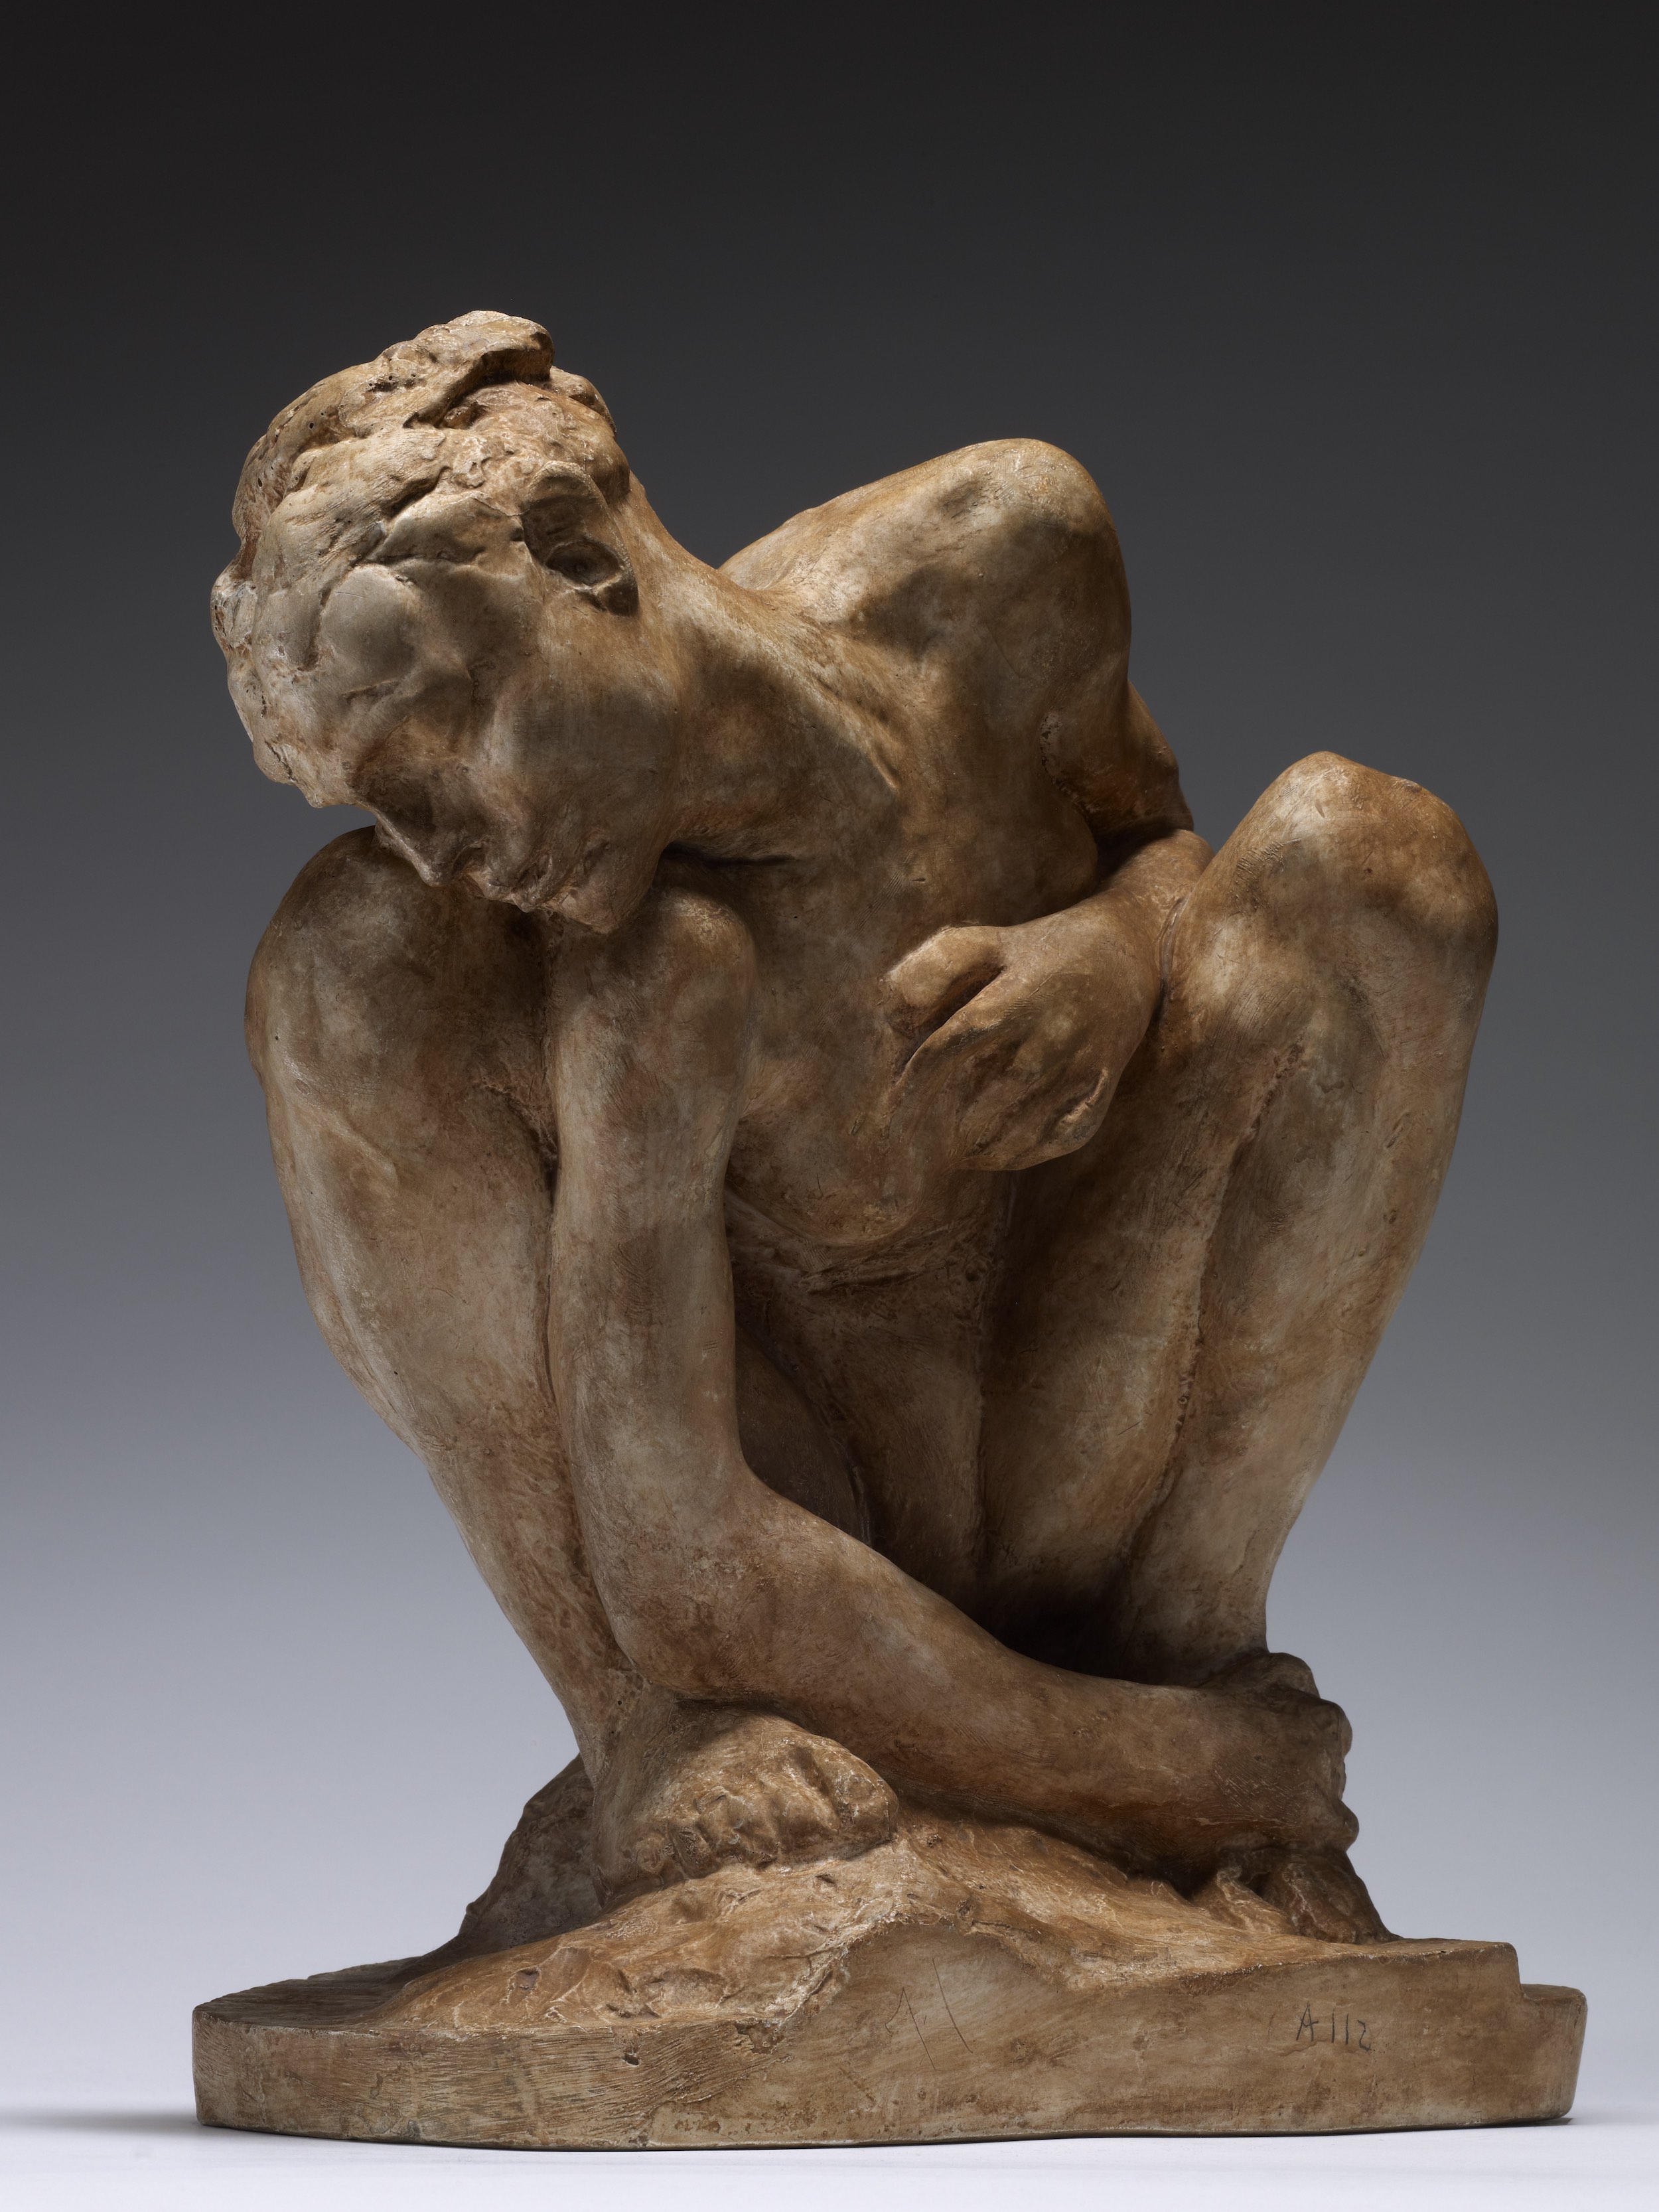 Kucająca kobieta by Auguste Rodin - 1882 